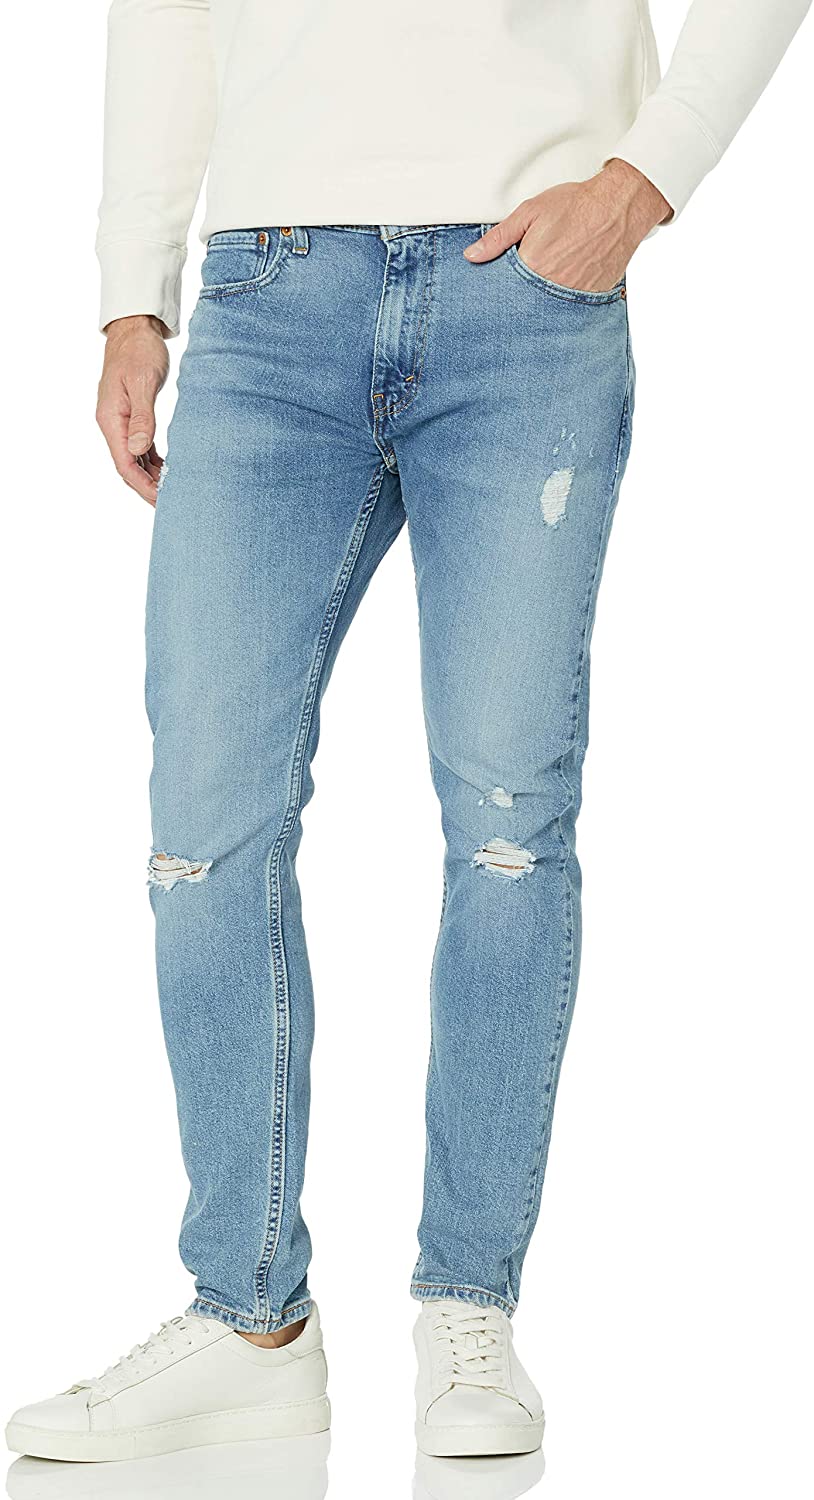 Kilauea Mountain Grand delusion peach Levi&#039;s Men&#039;s 512 Slim Taper Fit Jeans | eBay